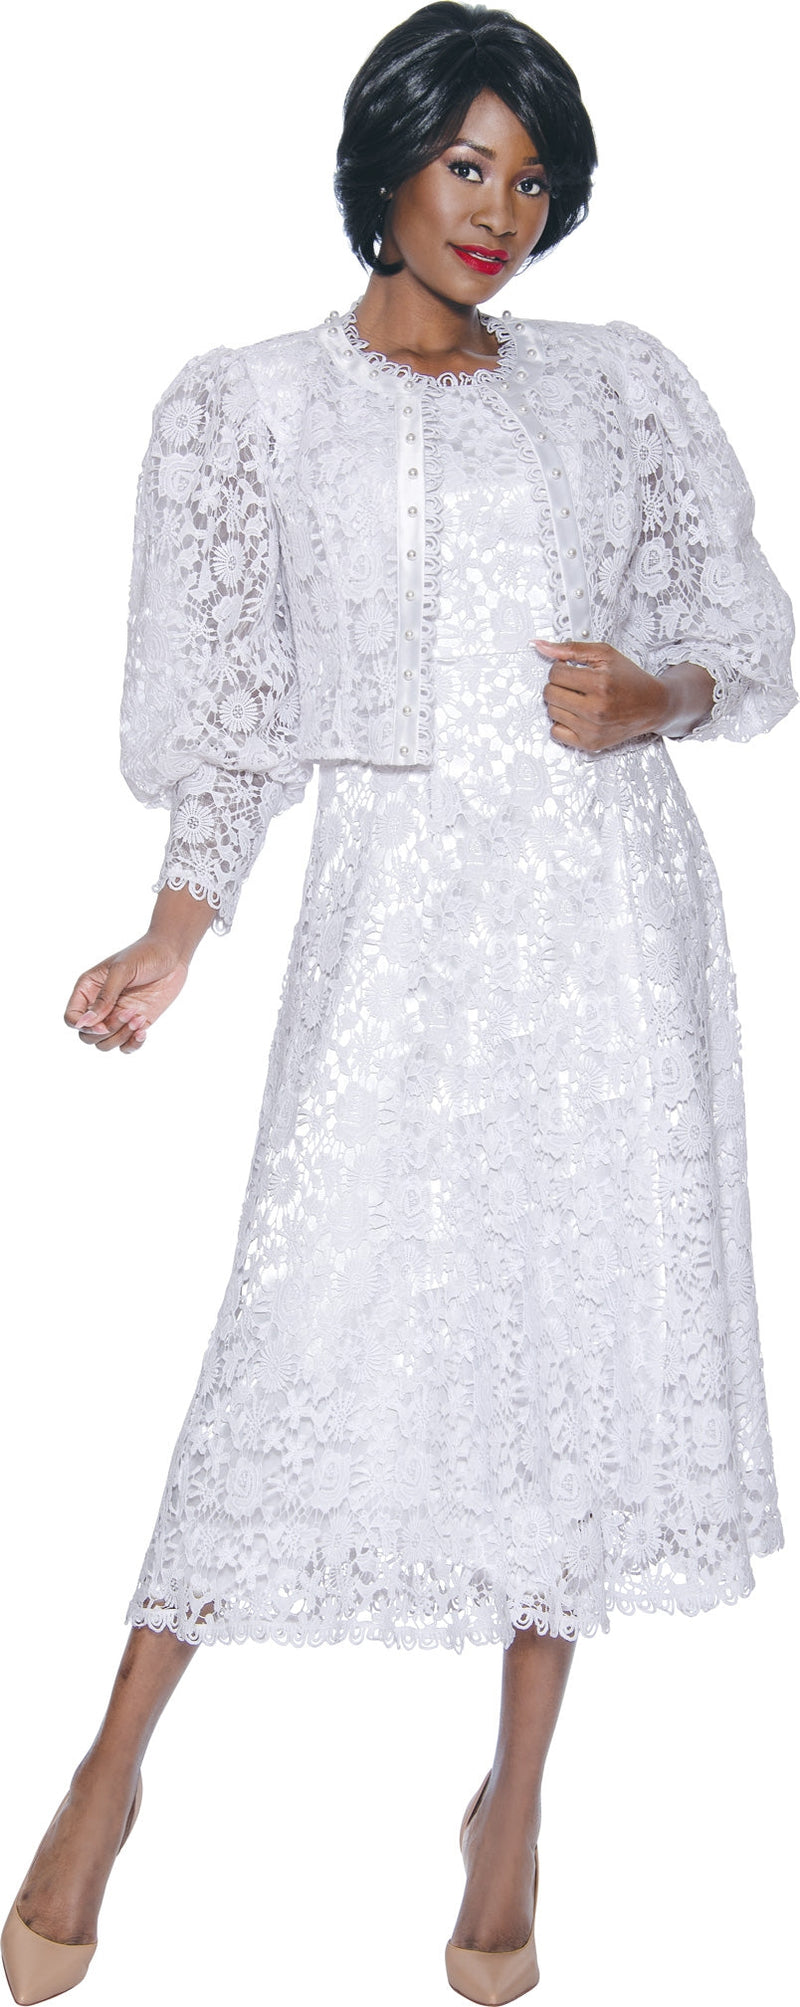 Terramina Church Dress 7051-White - Church Suits For Less